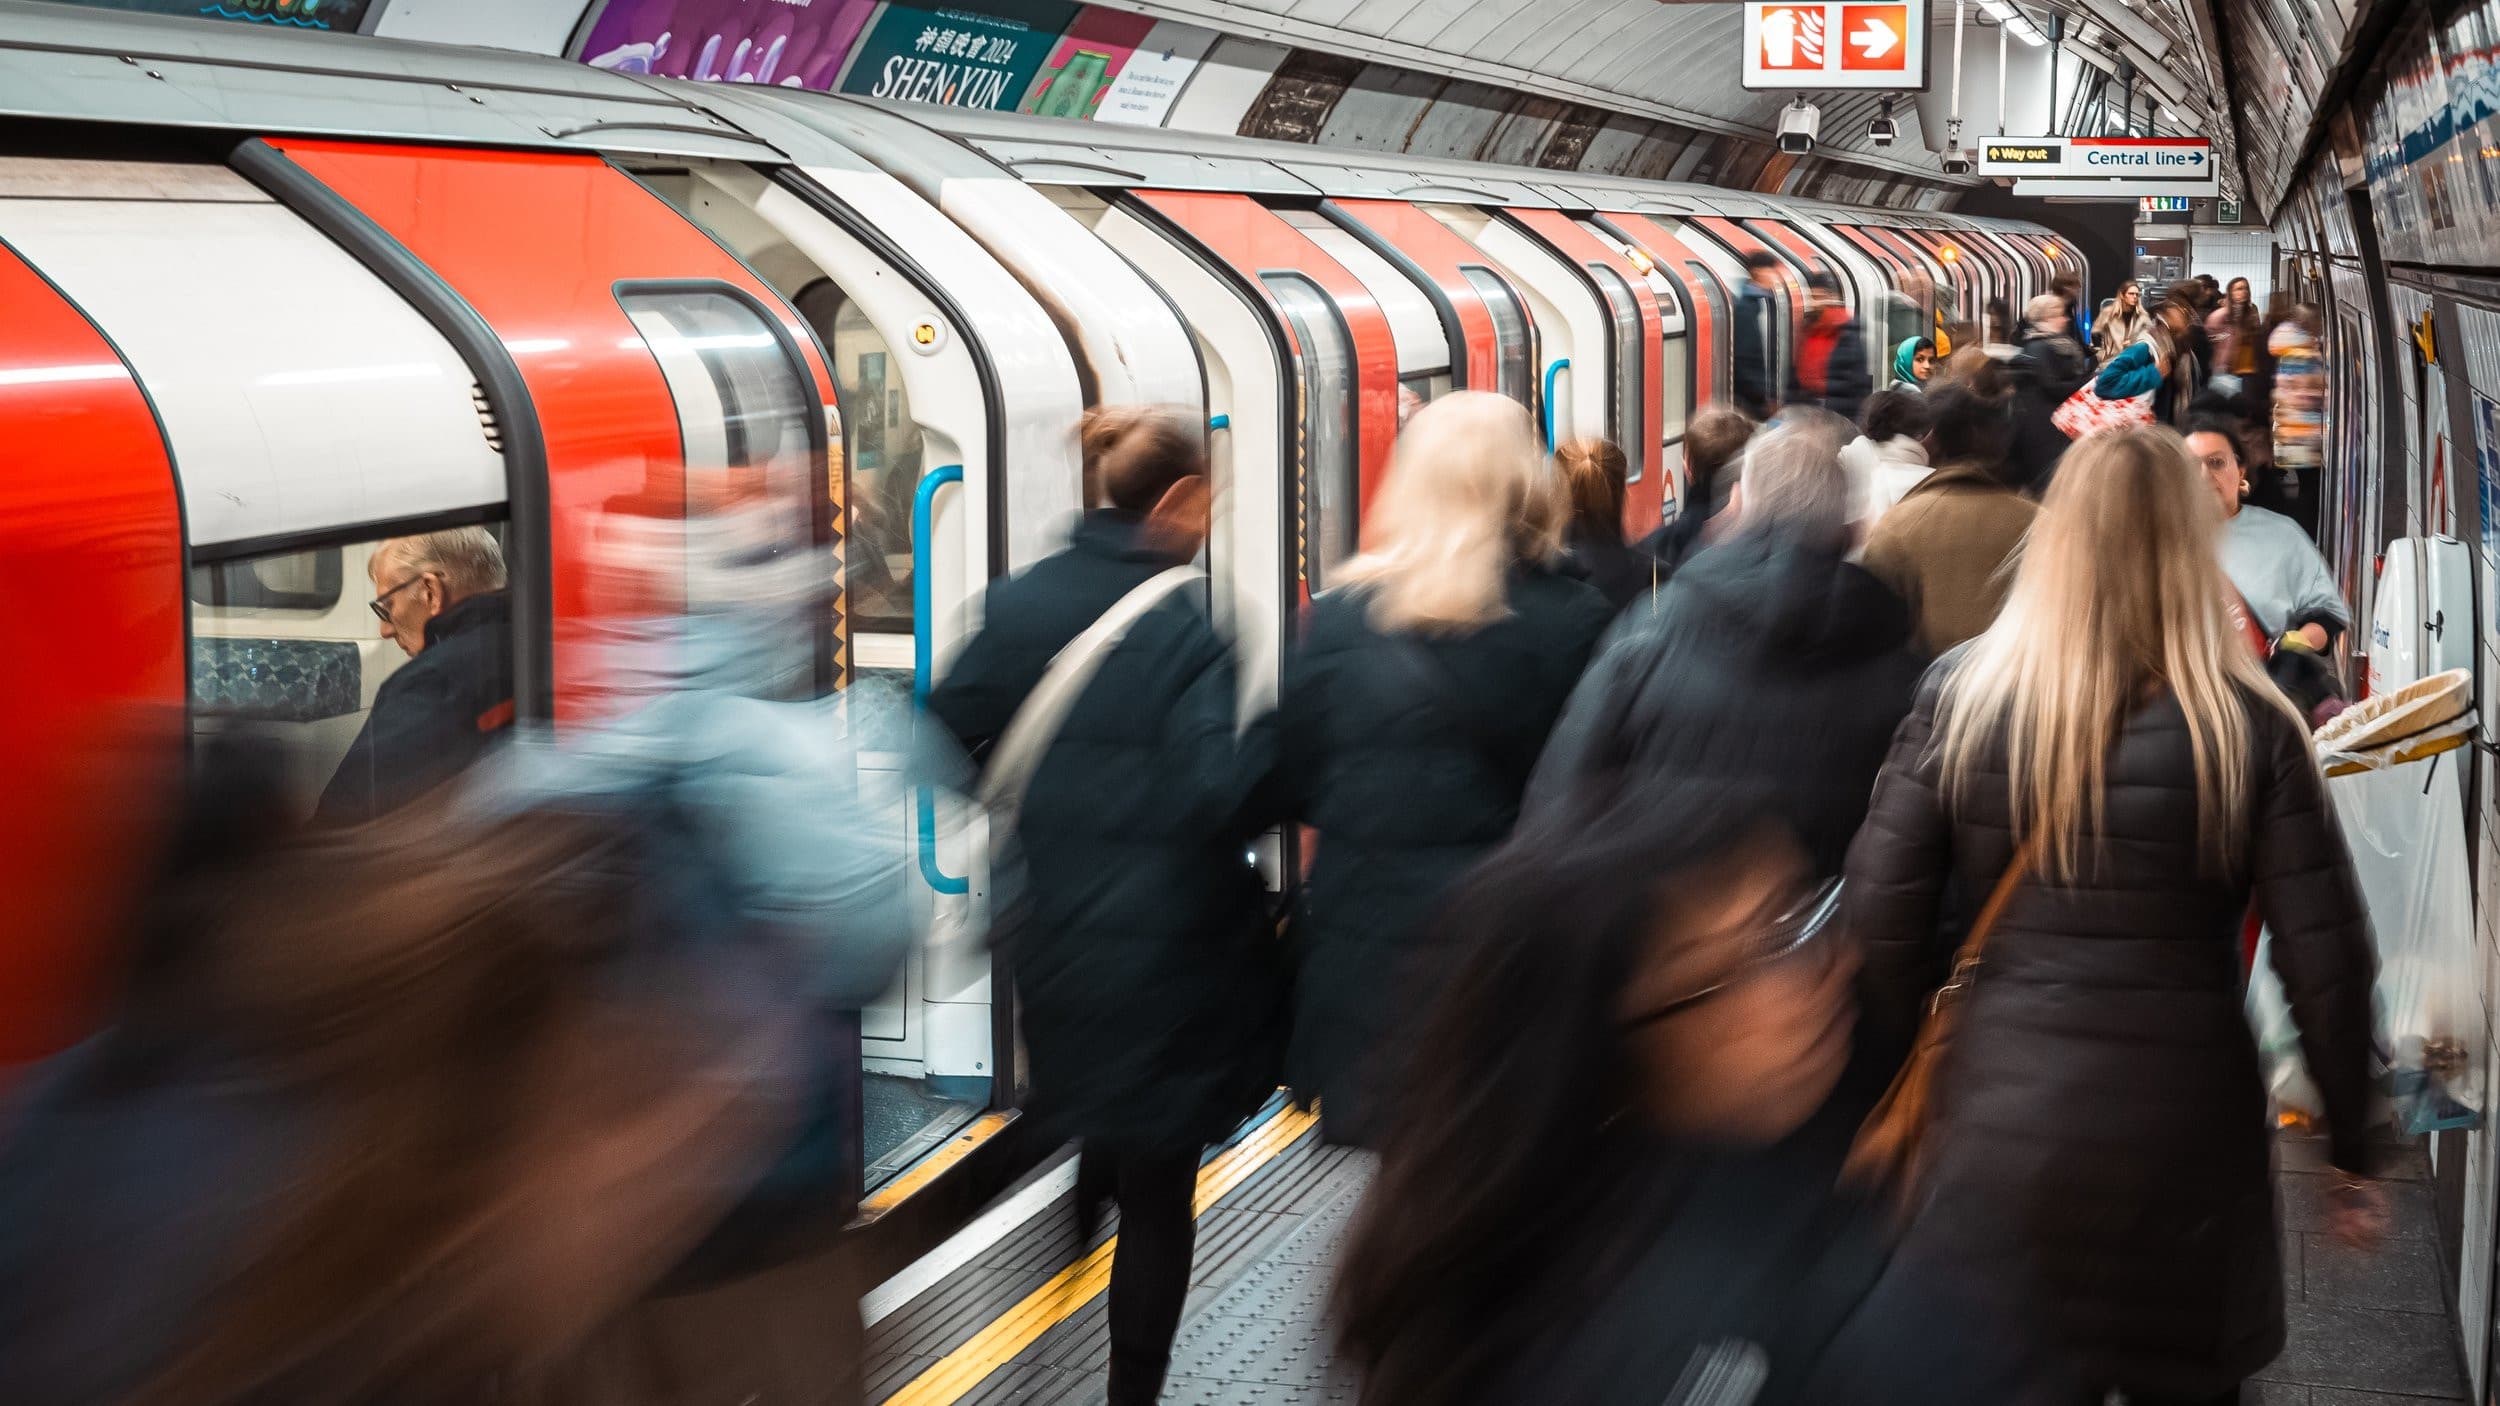 The Tube: Keep London Moving! - Season 1 Episode 5